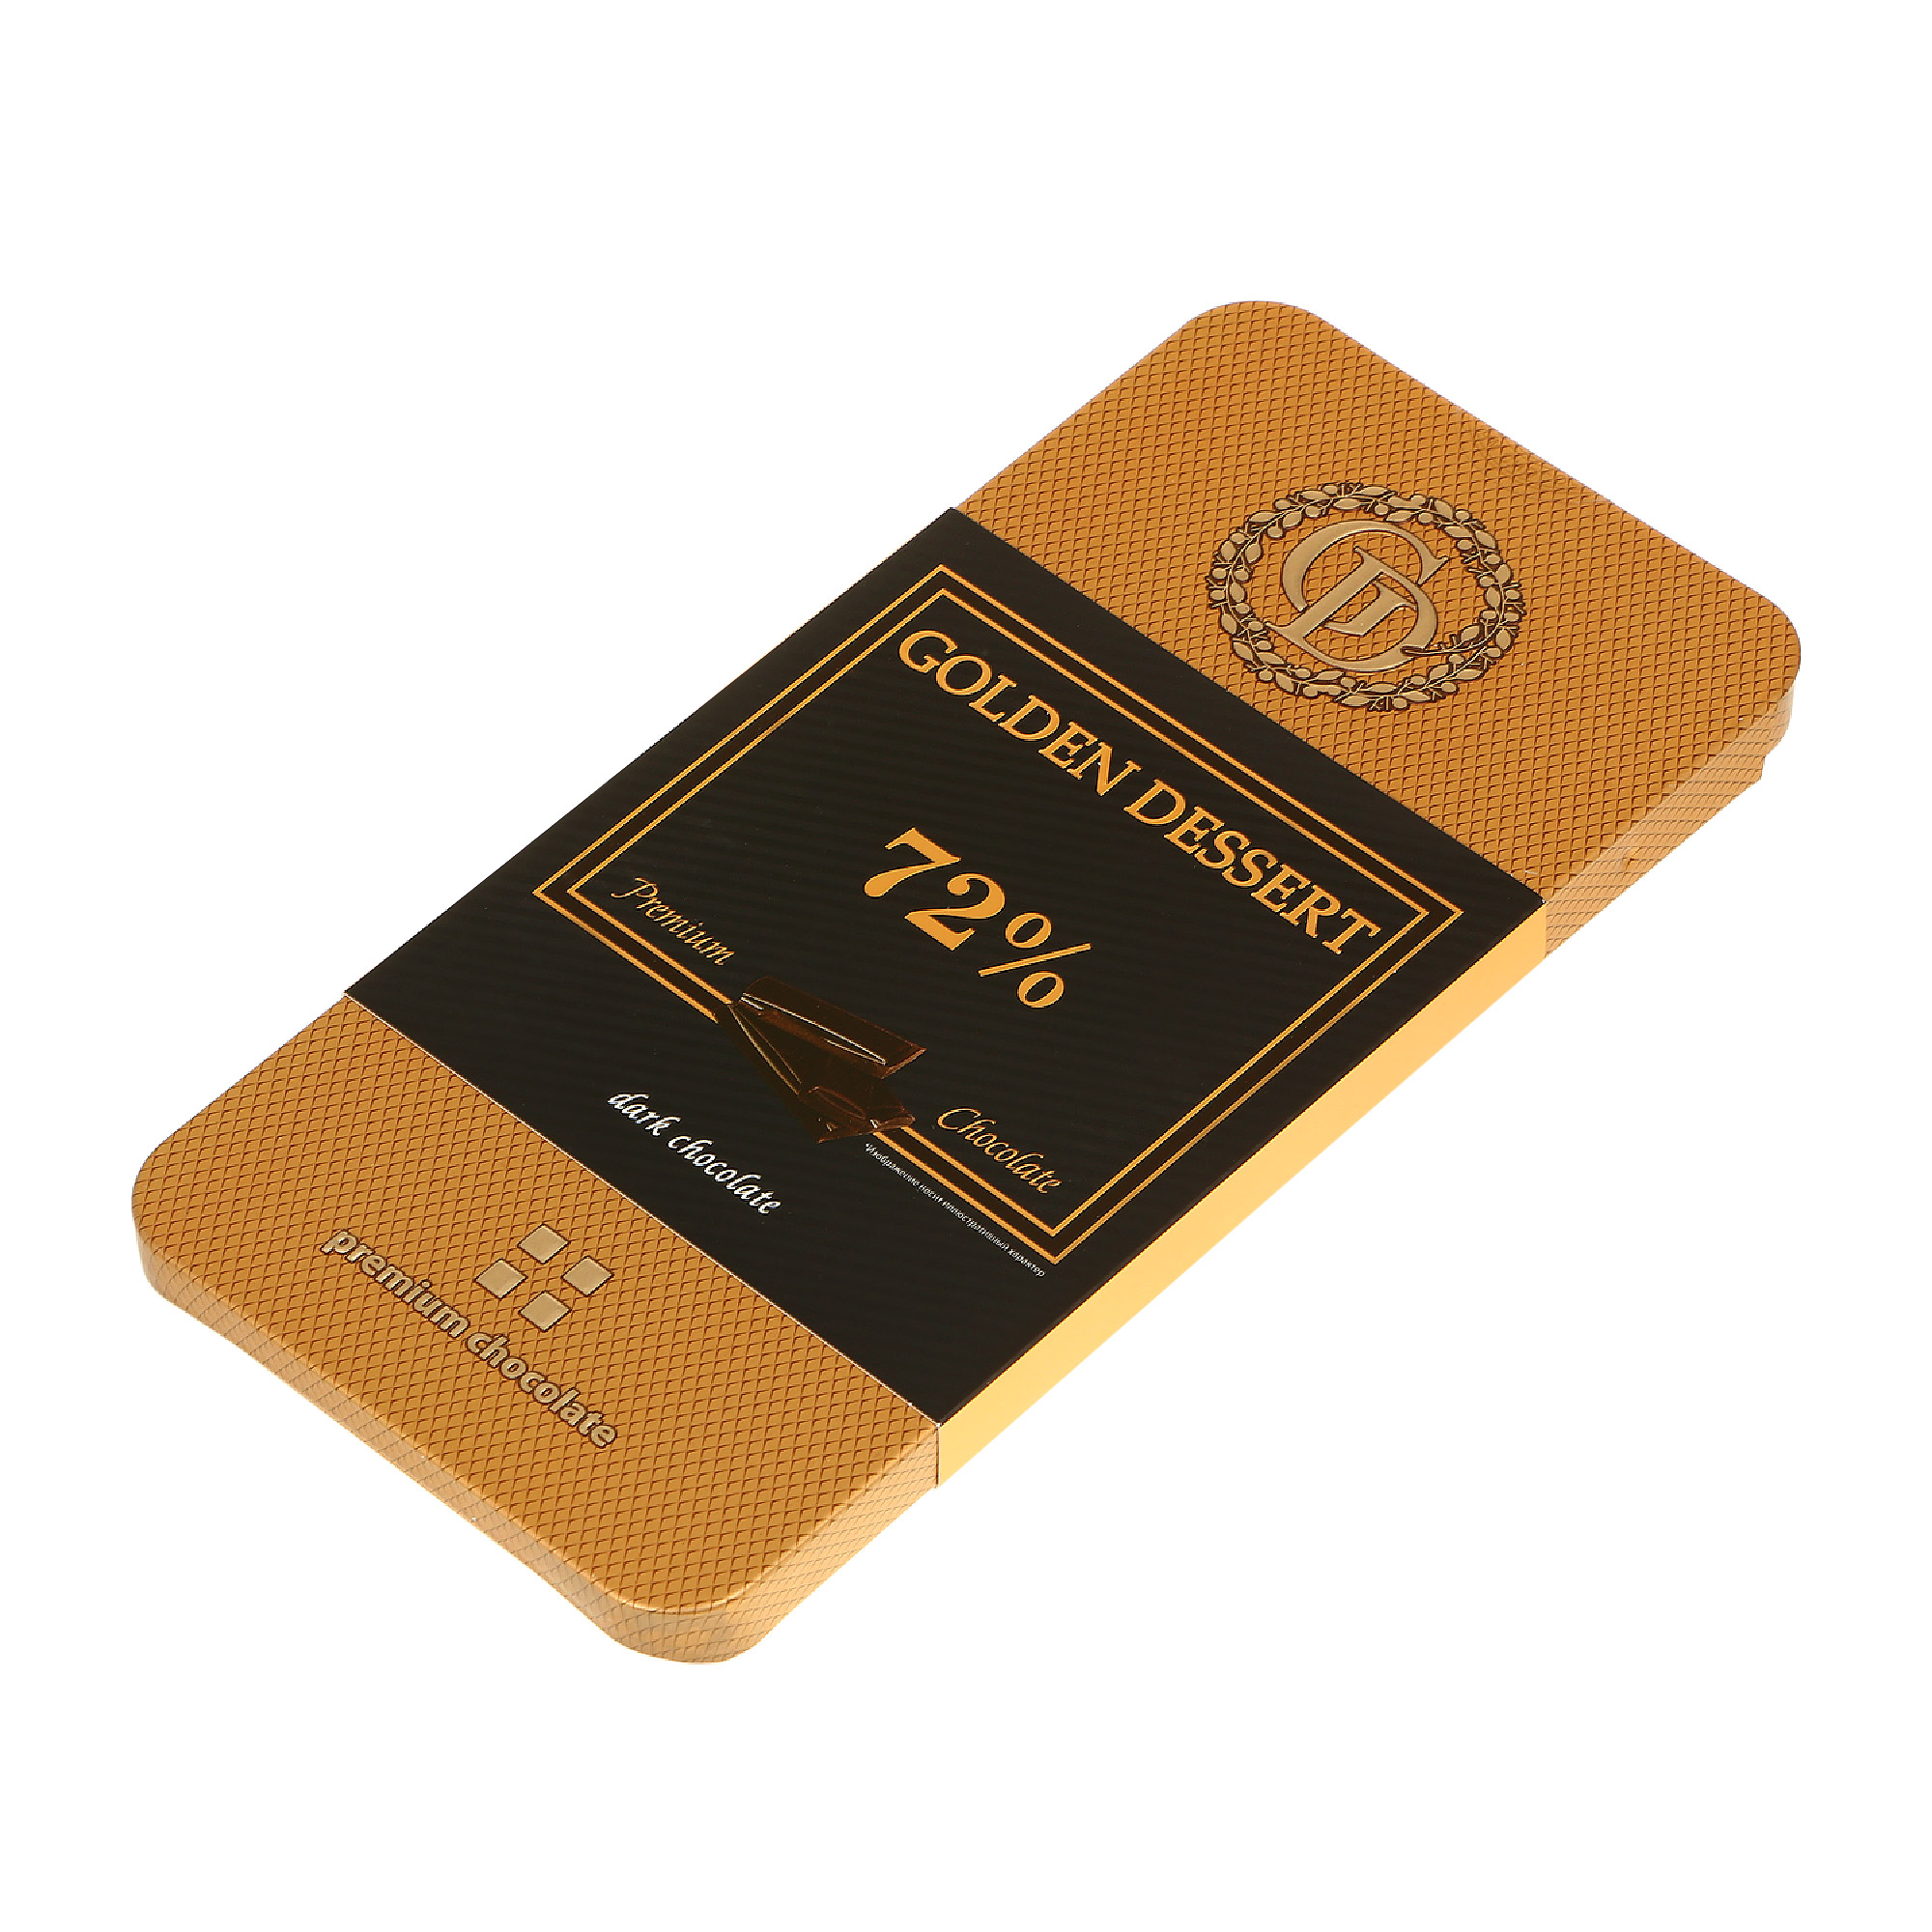 Шоколад горький GOLDEN DESSERT 72% 100 г шоколад горький golden dessert 72% с апельсином 100 г